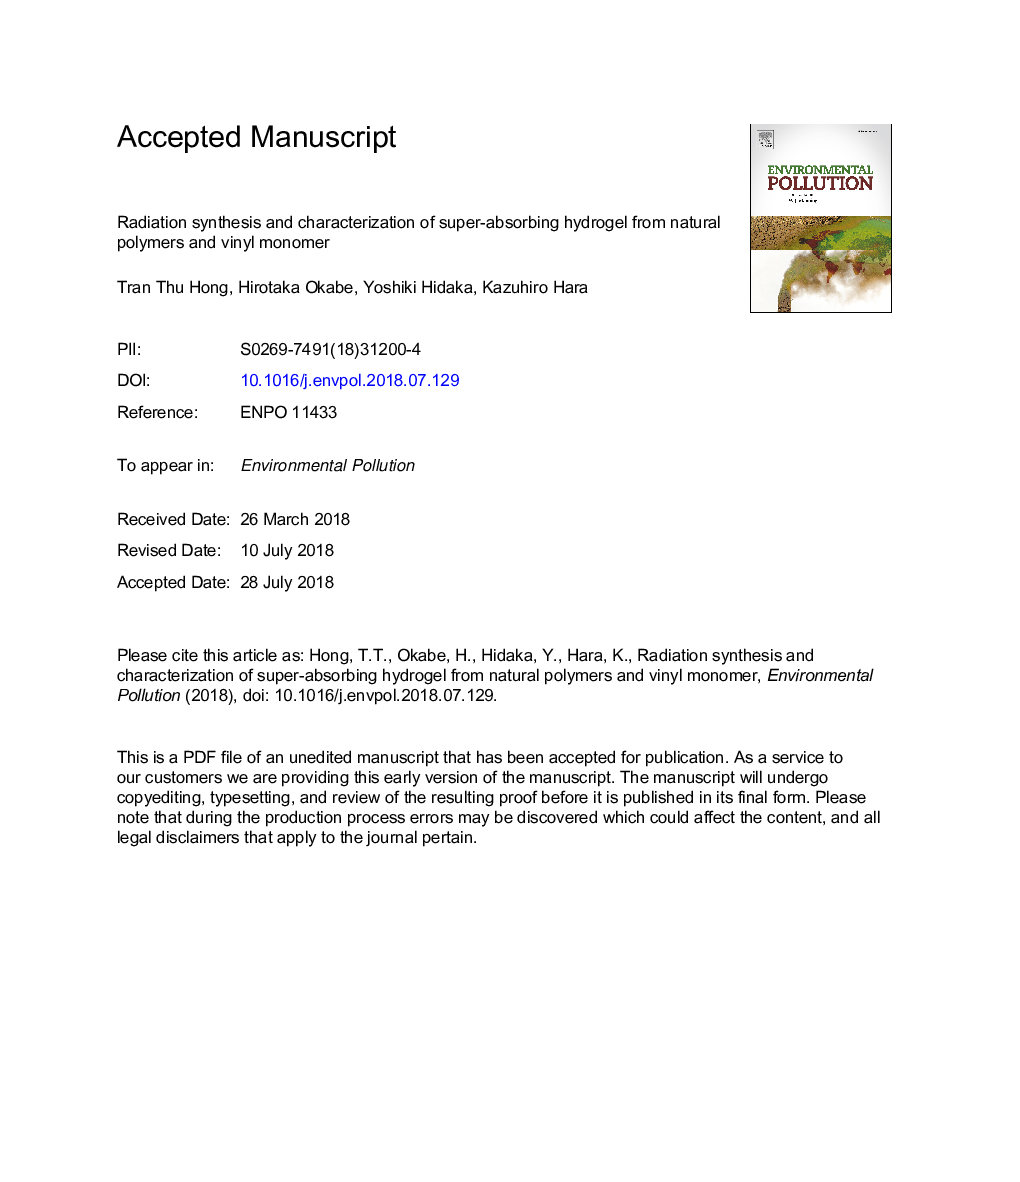 سنتز تابش و تعیین ویژگی هیدروژل فوق جذب از پلیمرهای طبیعی و مونومر وینیل 